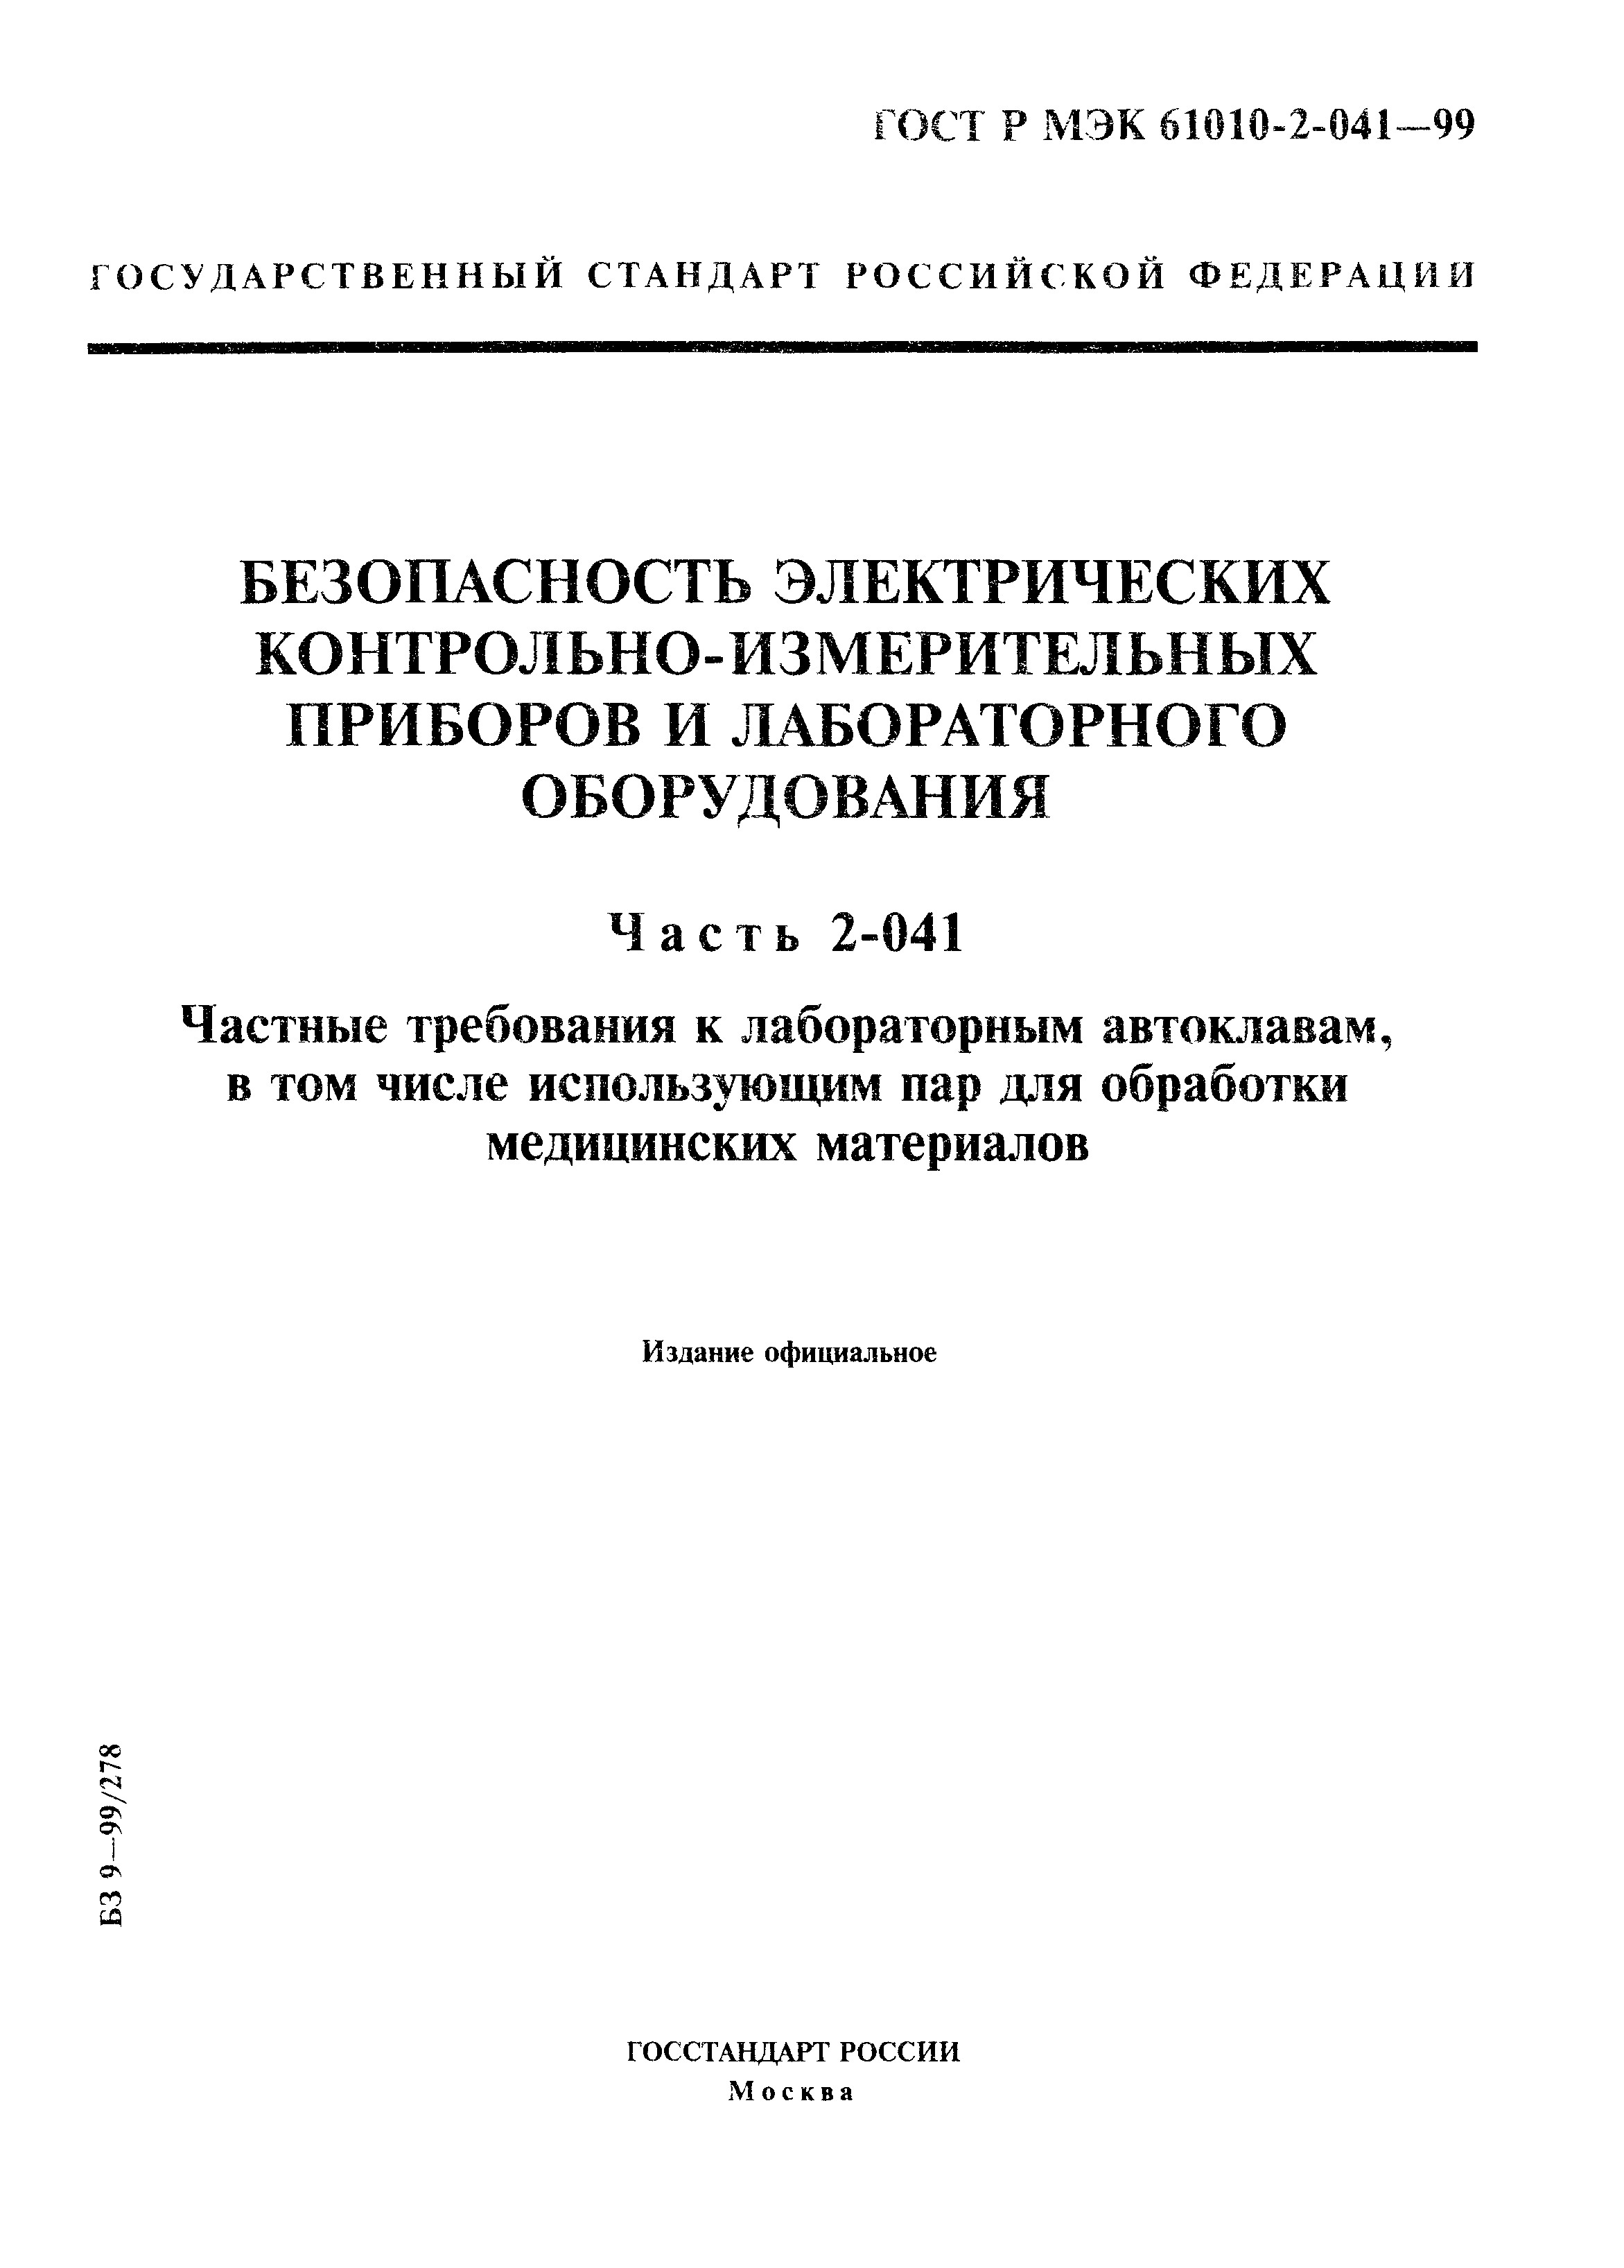 ГОСТ Р МЭК 61010-2-041-99